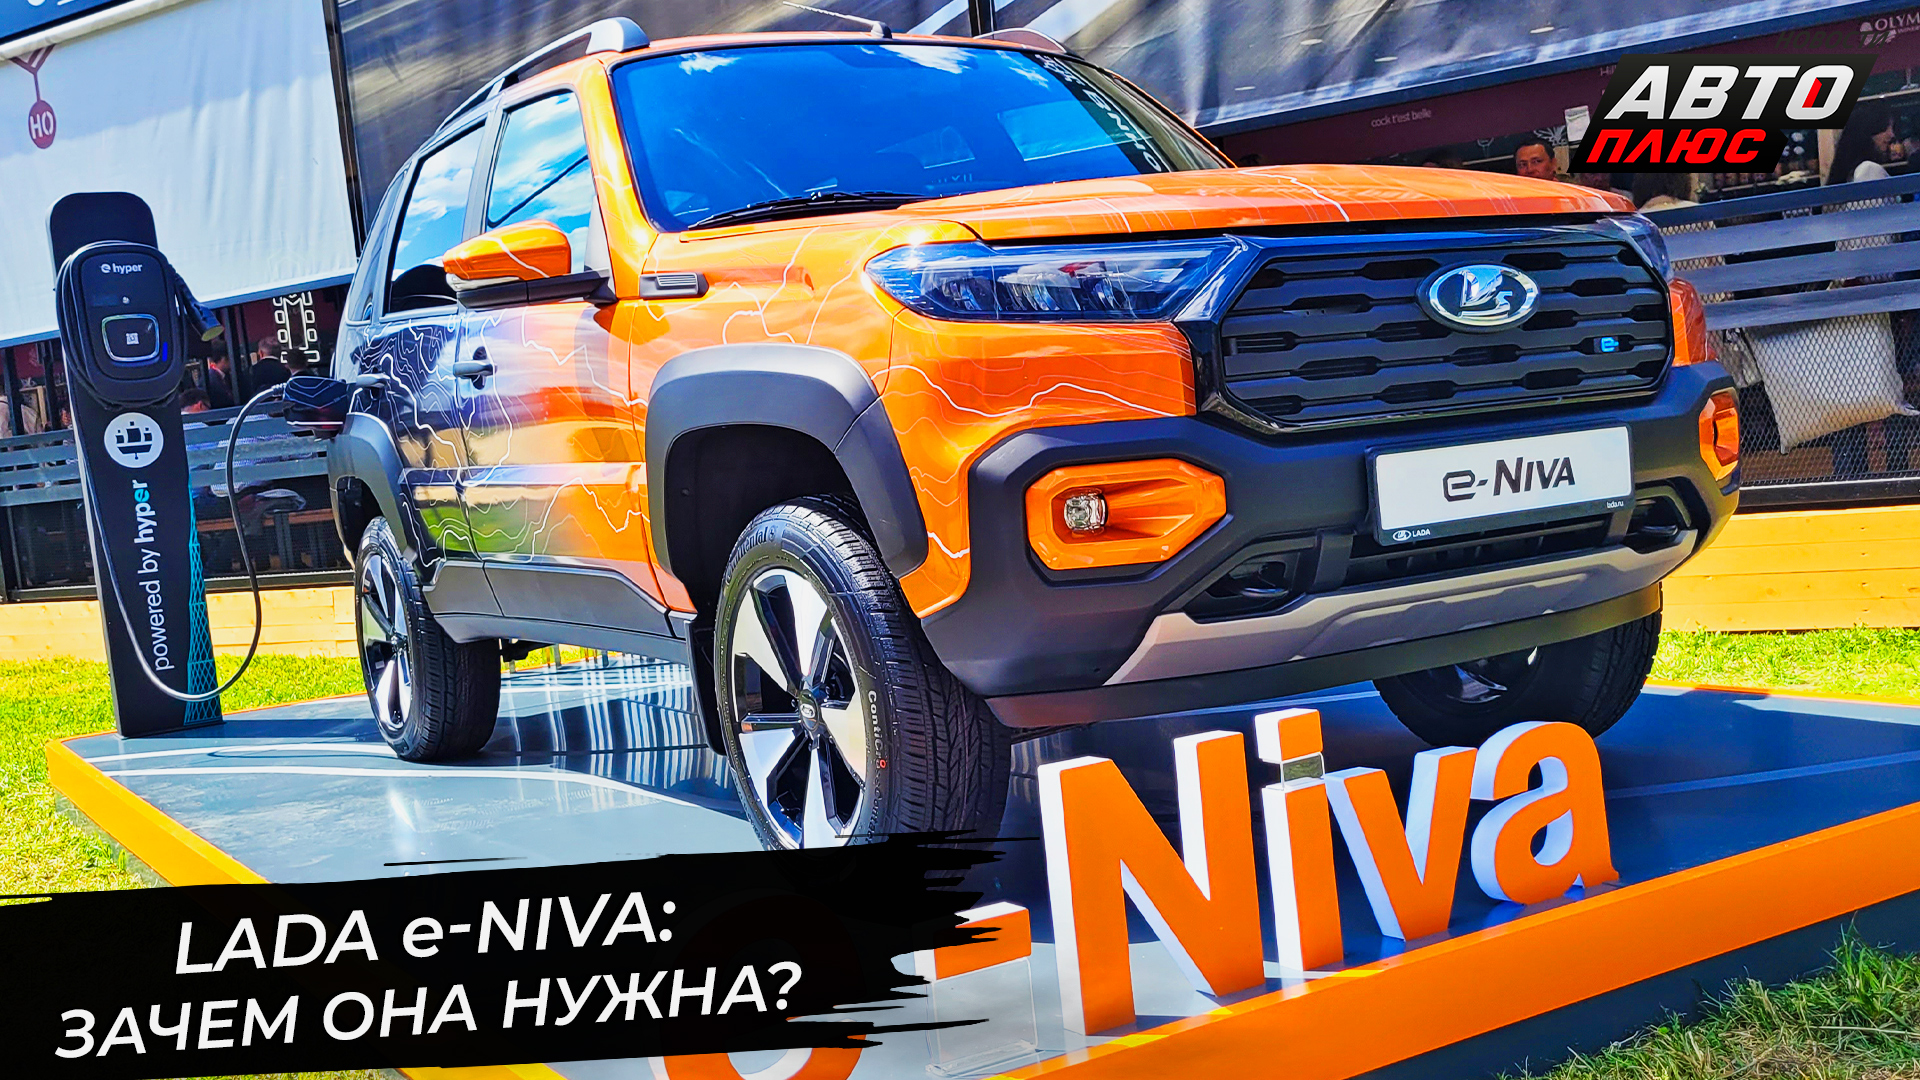 Lada e-Niva предварила рестайлинг Нивы Тревел 📺 Новости с колёс №2946